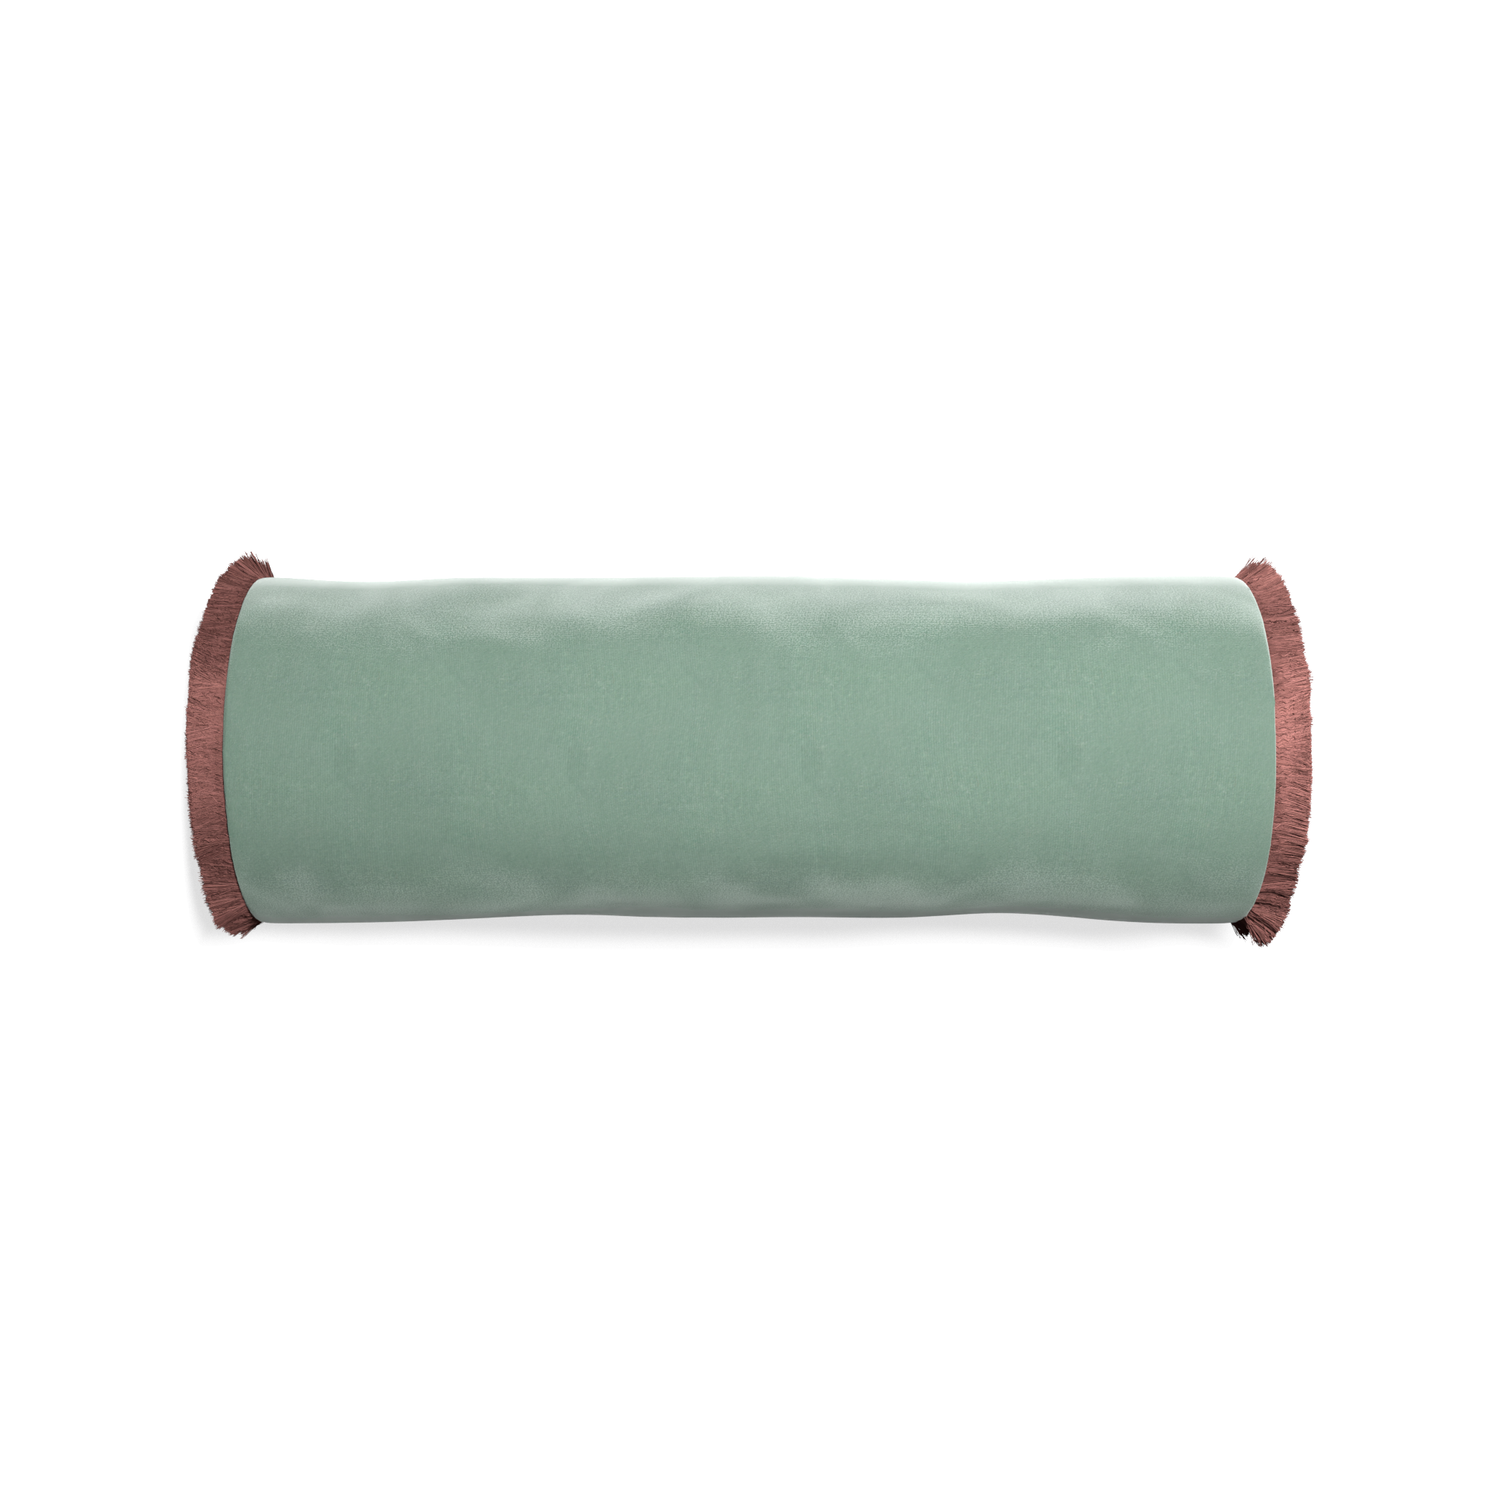 bolster blue green velvet pillow with dusty rose fringe